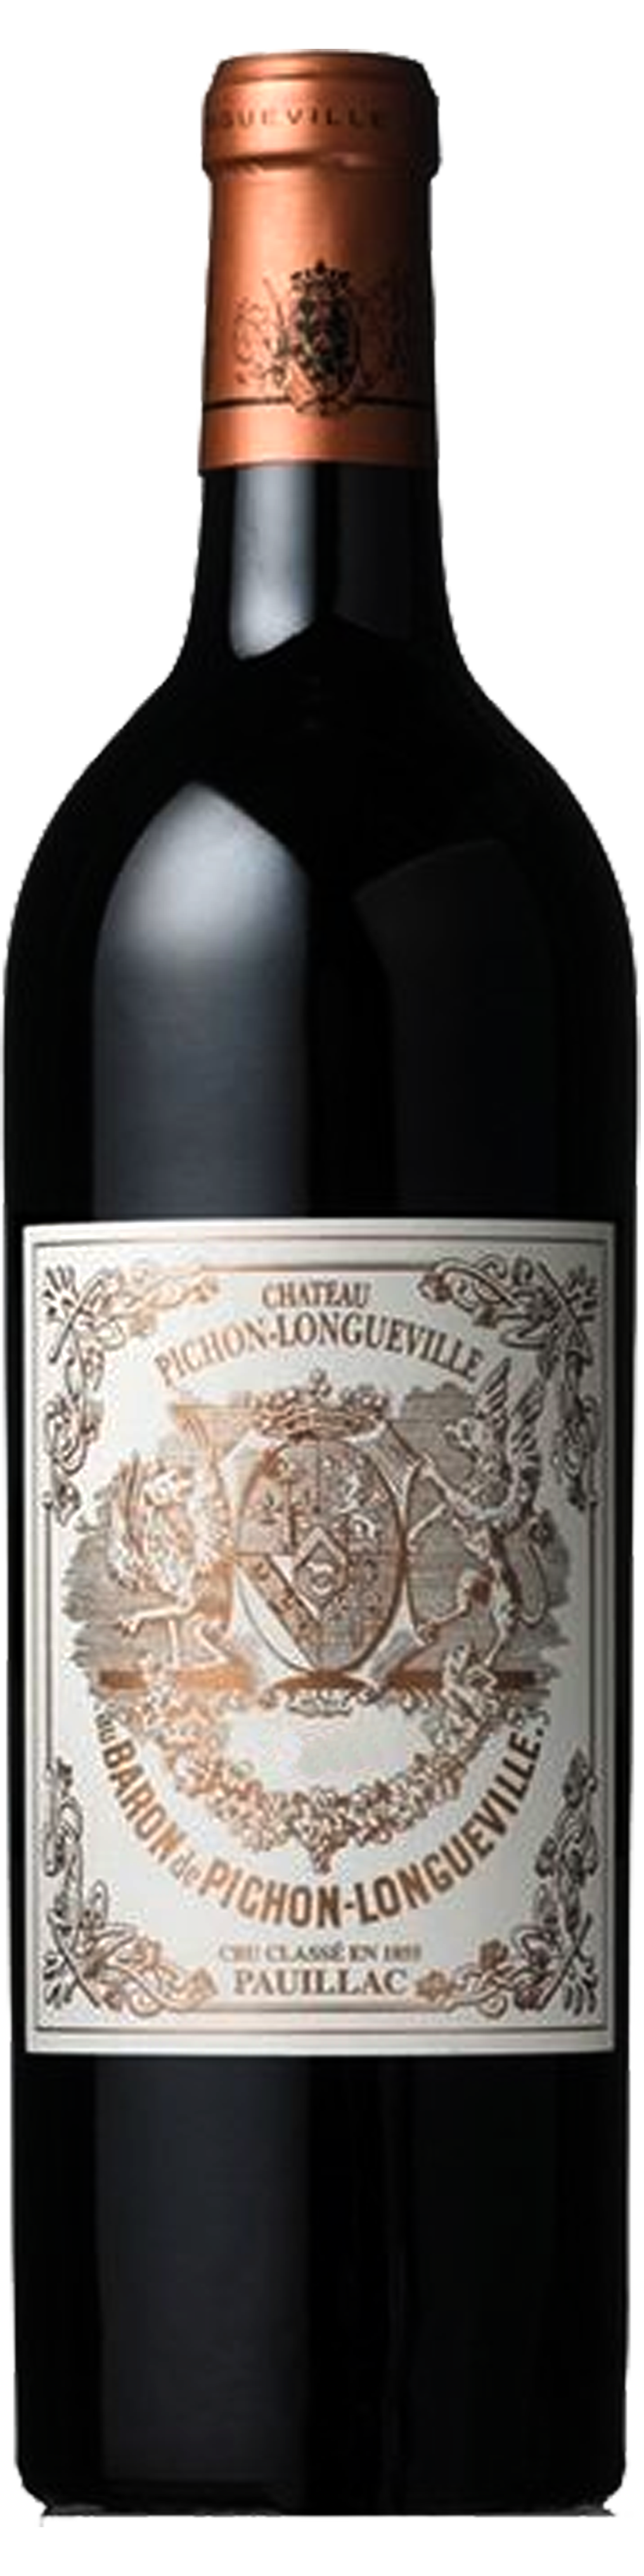 Bottle shot of 1999 Pichon Longueville Baron, 2ème Cru Pauillac